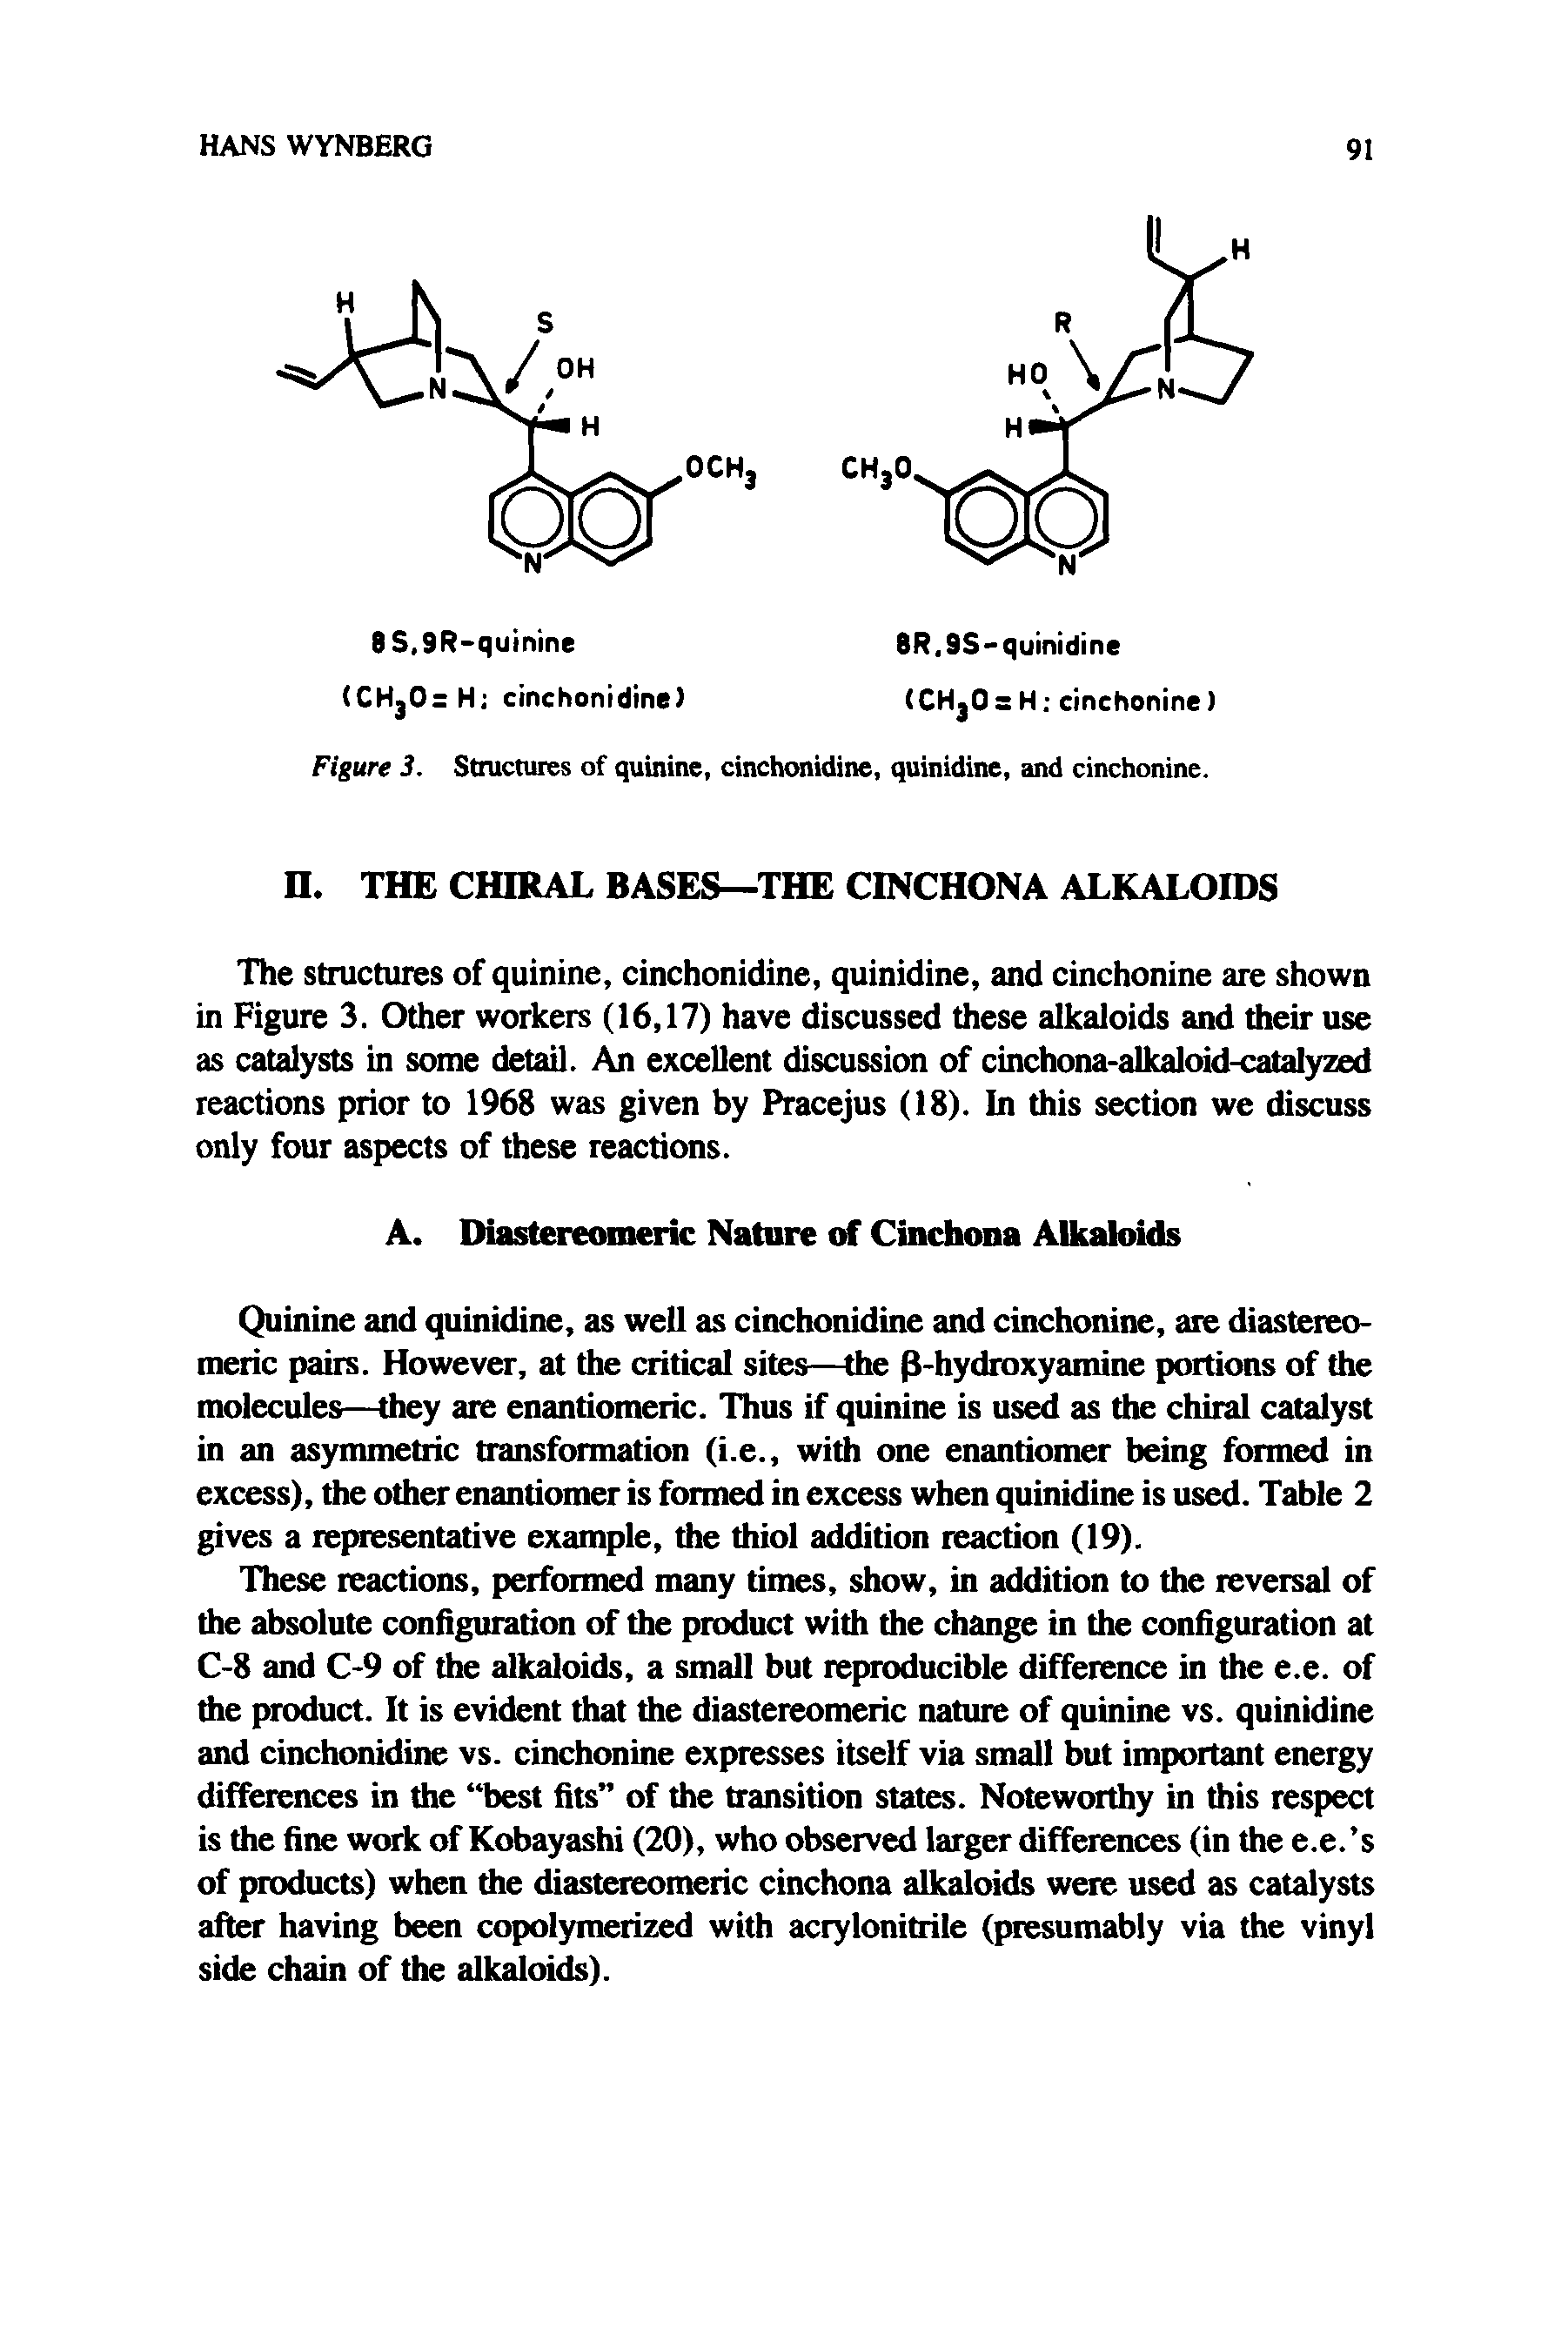 Figure 3. Structures of quinine, cinchonidine, quinidine, and cinchonine.